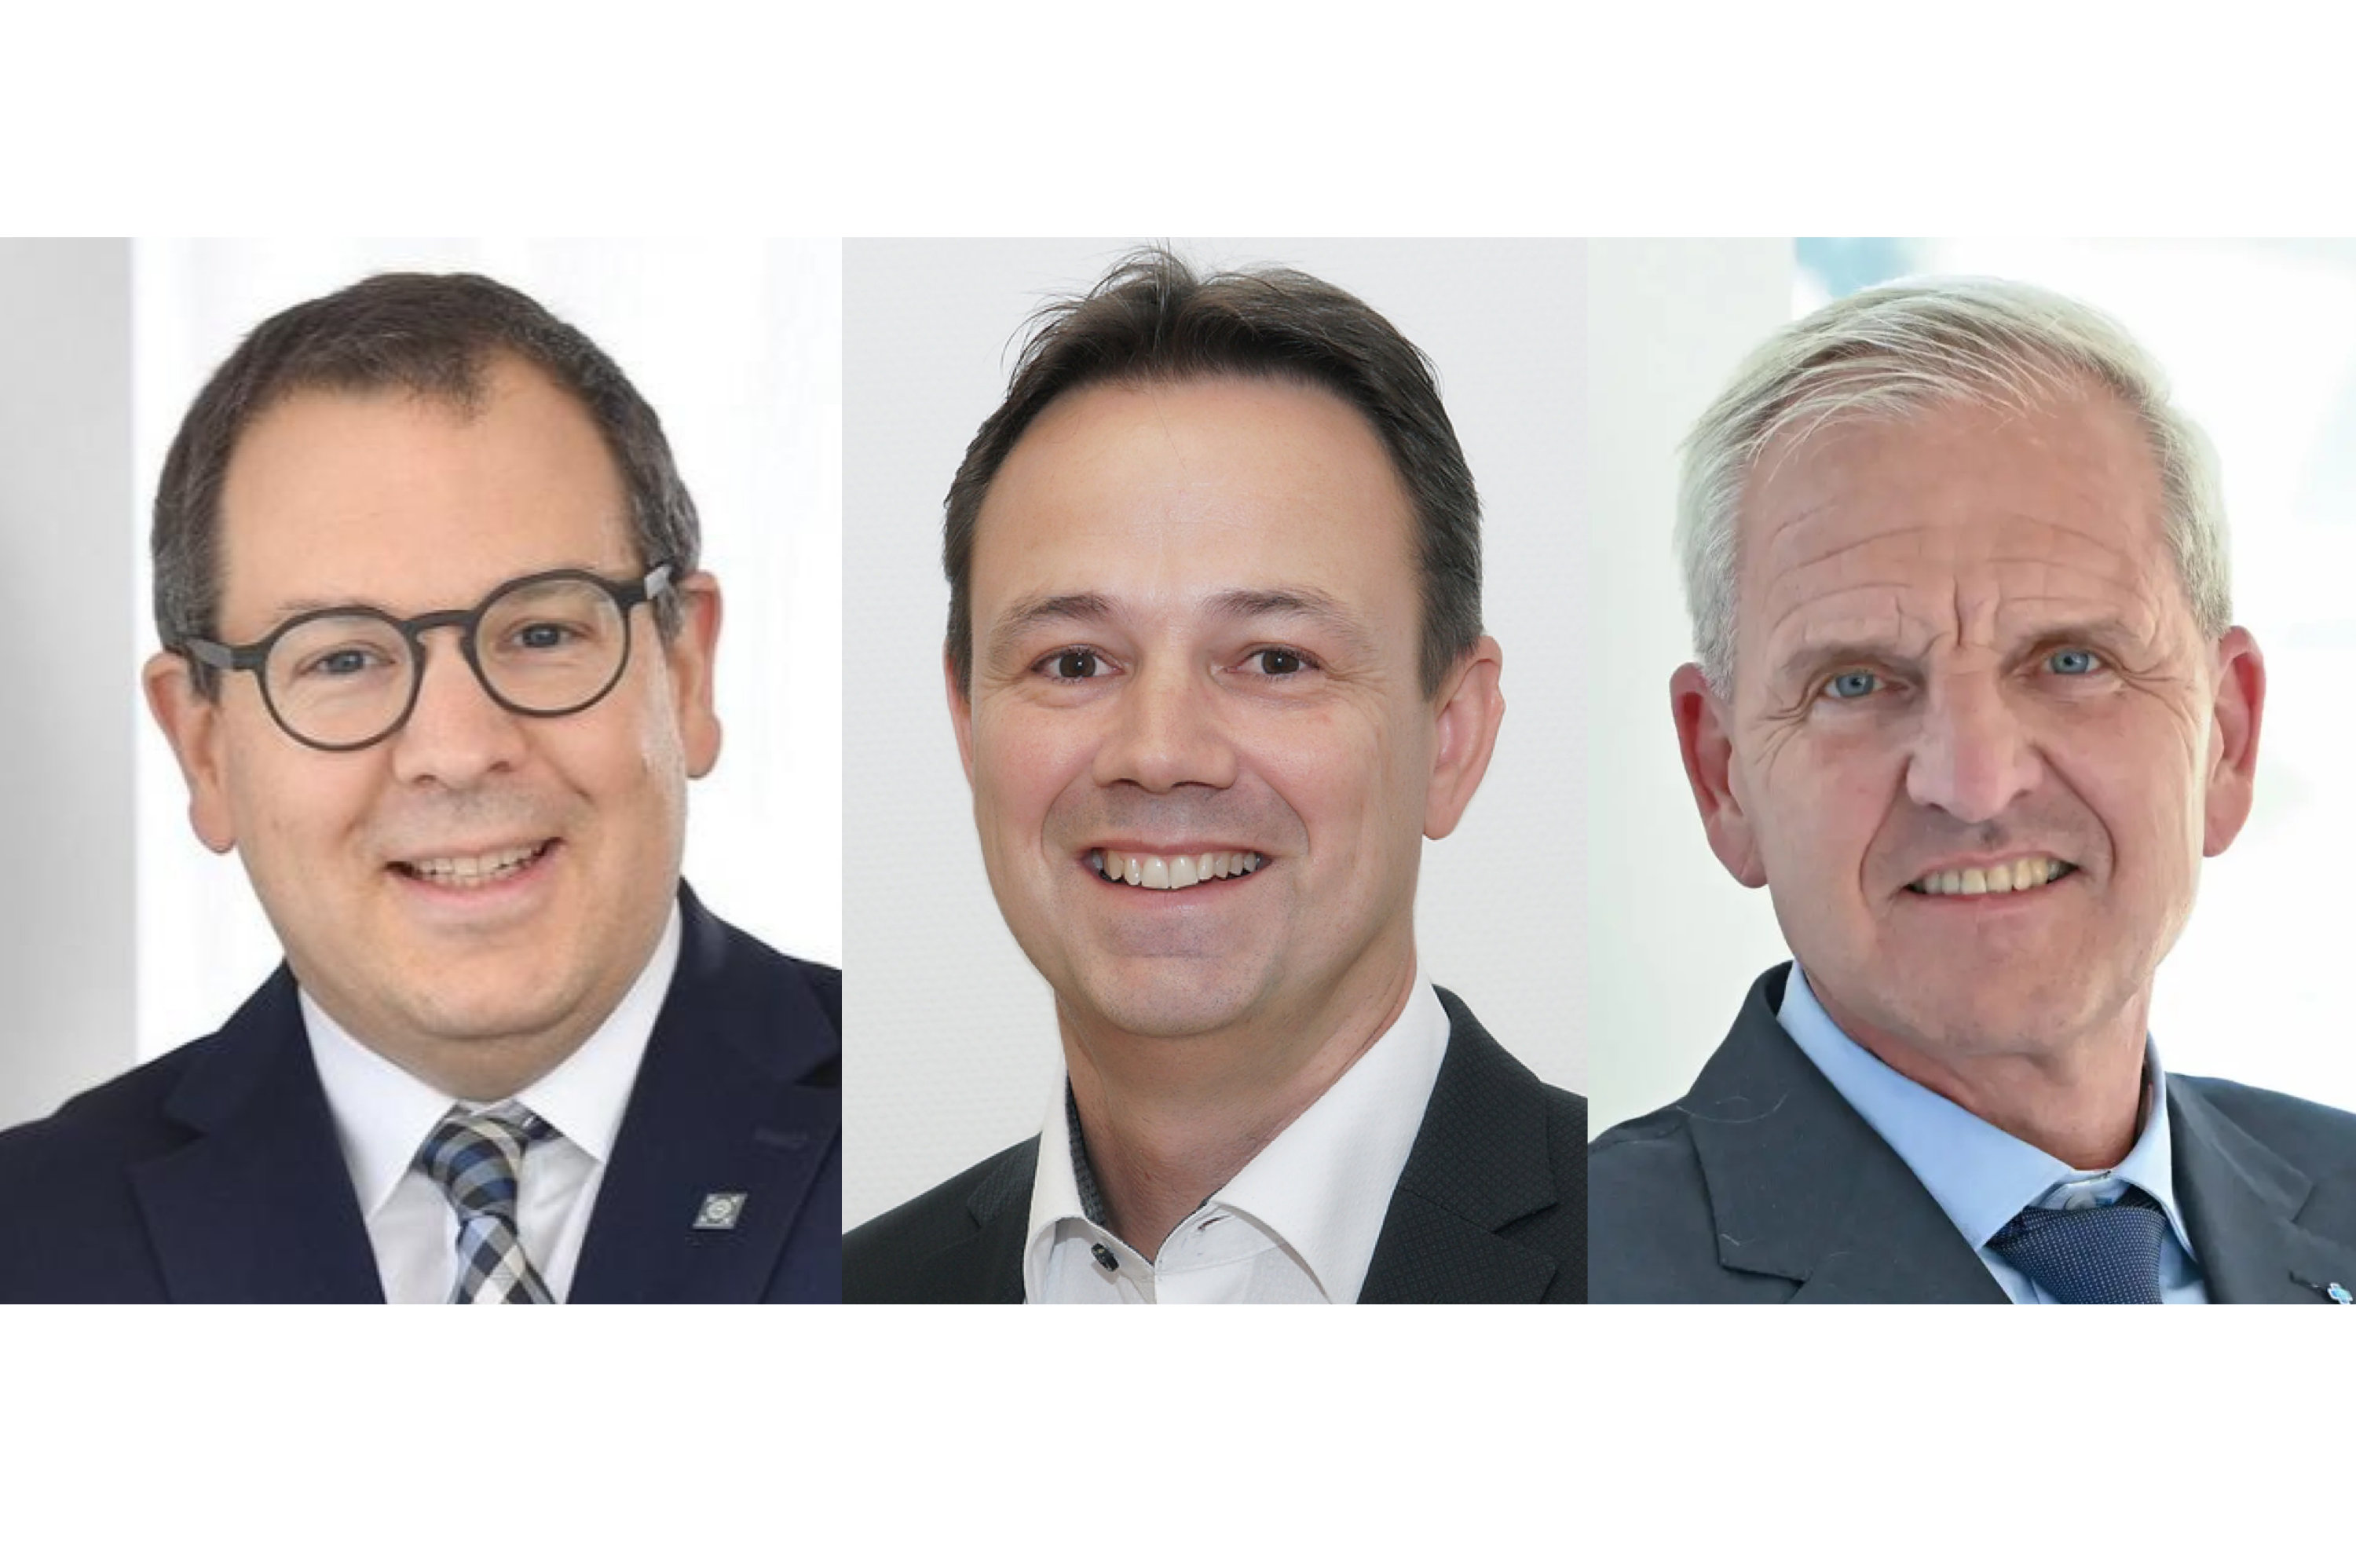 Hessische Krankenhausgesellschaft mit neuer Führungsspitze: Neues Präsidium gewählt